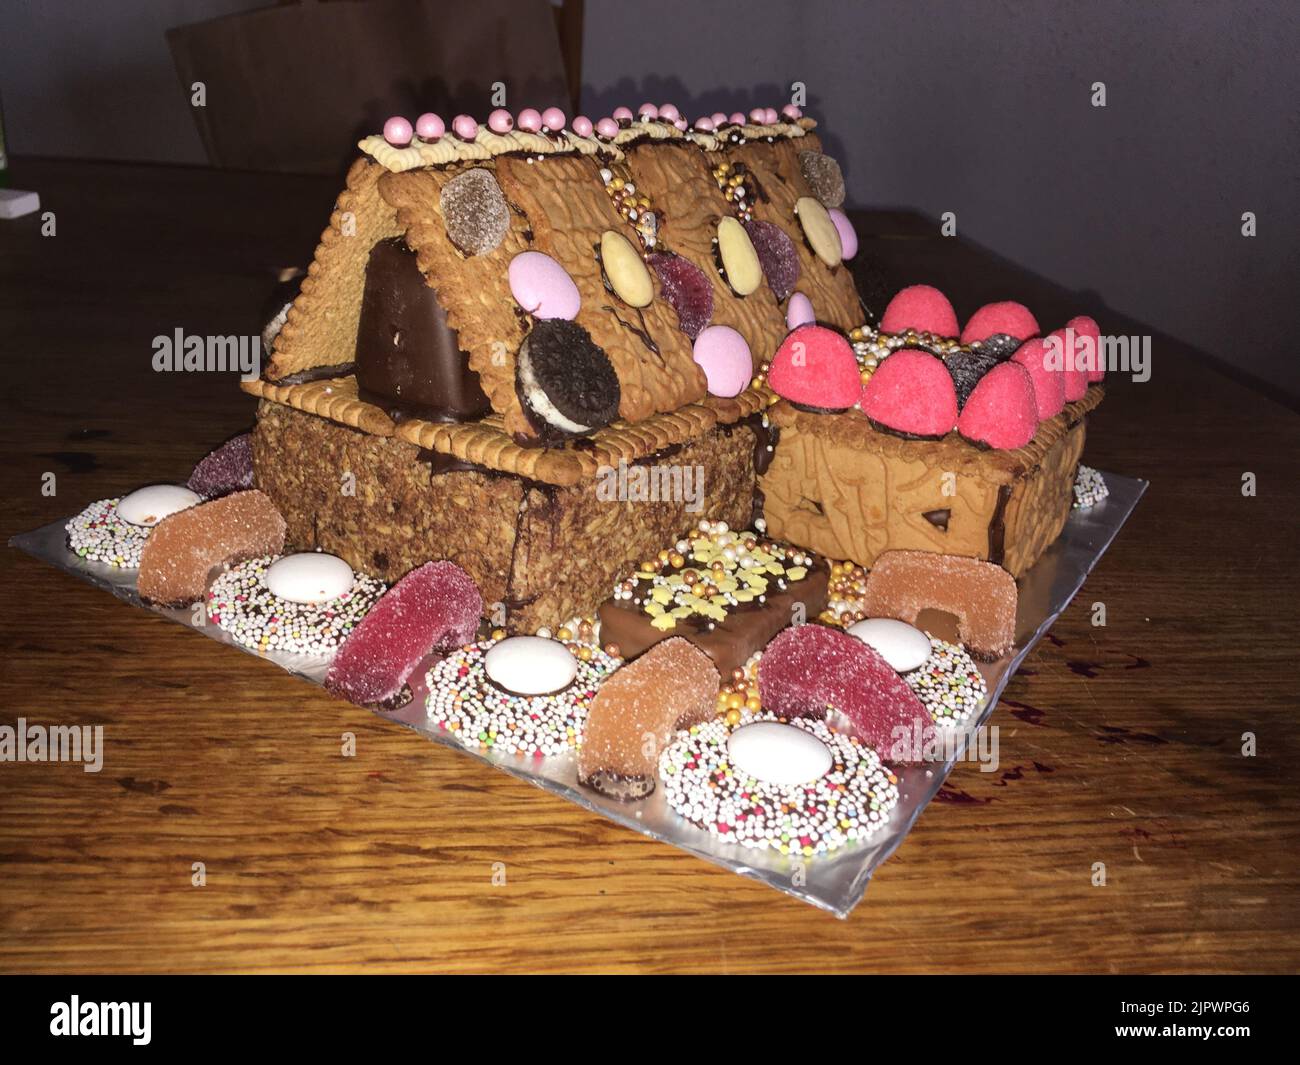 Knusperhäuschen aus Lebkuchen, Keksen, Spekulatius und Süßigkeiten Stock Photo